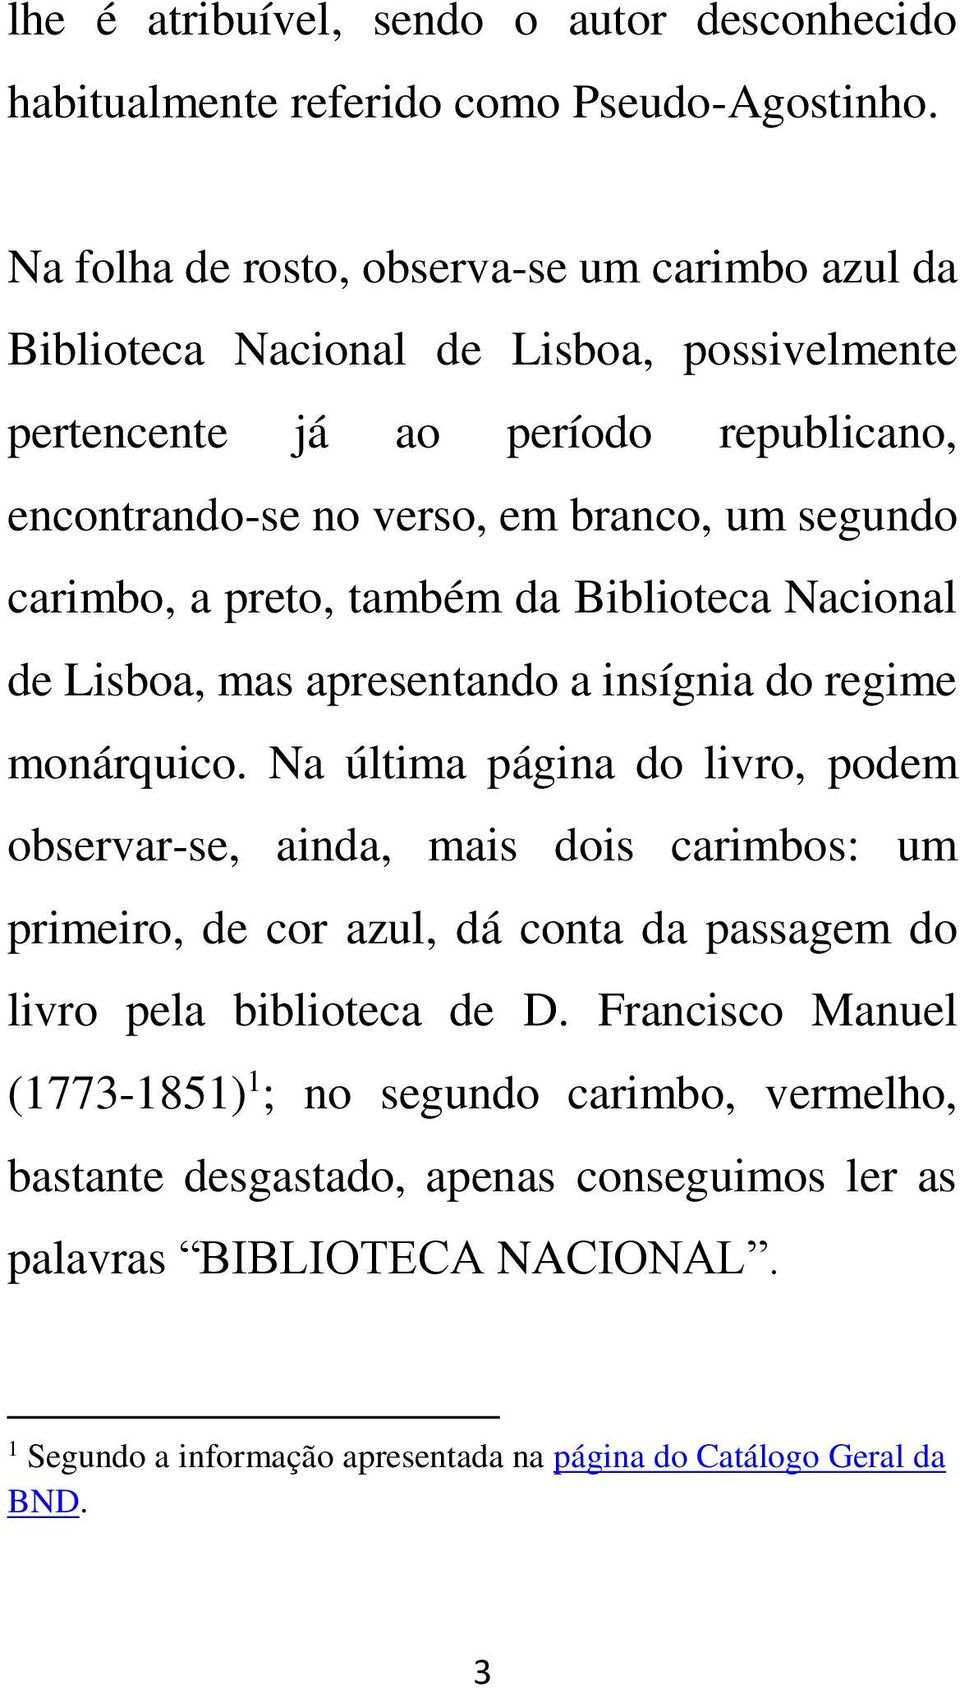 carimbo, a preto, também da Biblioteca Nacional de Lisboa, mas apresentando a insígnia do regime monárquico.